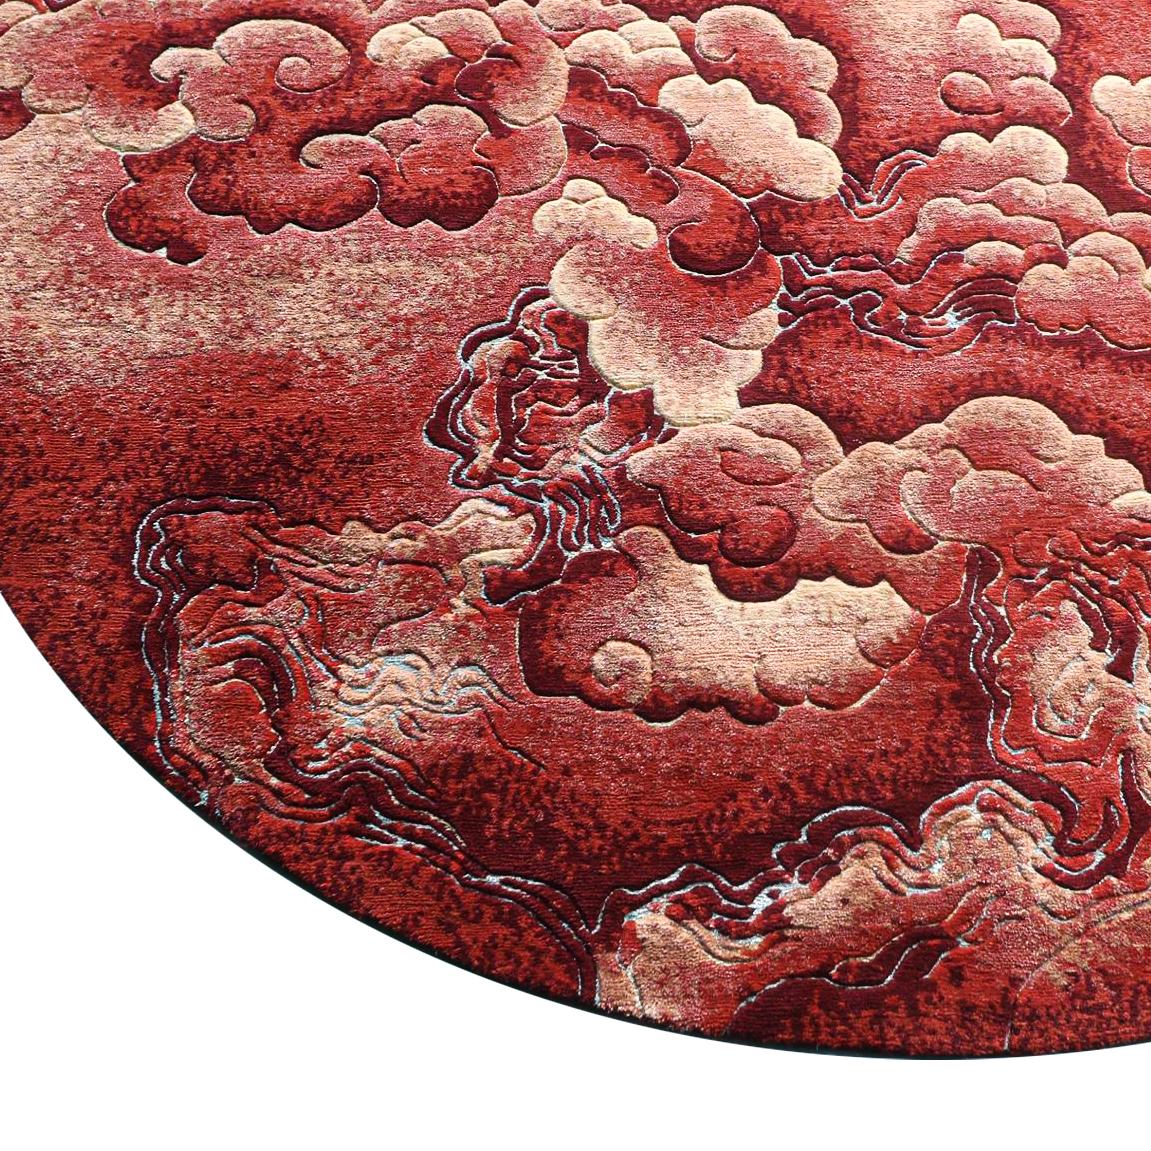 Erleben Sie die exquisite Schönheit der Chinoiserie Collection'S: Atemberaubende Teppiche, inspiriert von chinesischen Mythen und Legenden

Tauchen Sie ein in die fesselnde Welt der Chinoiserie-Kollektion, einer Serie komplizierter und eleganter